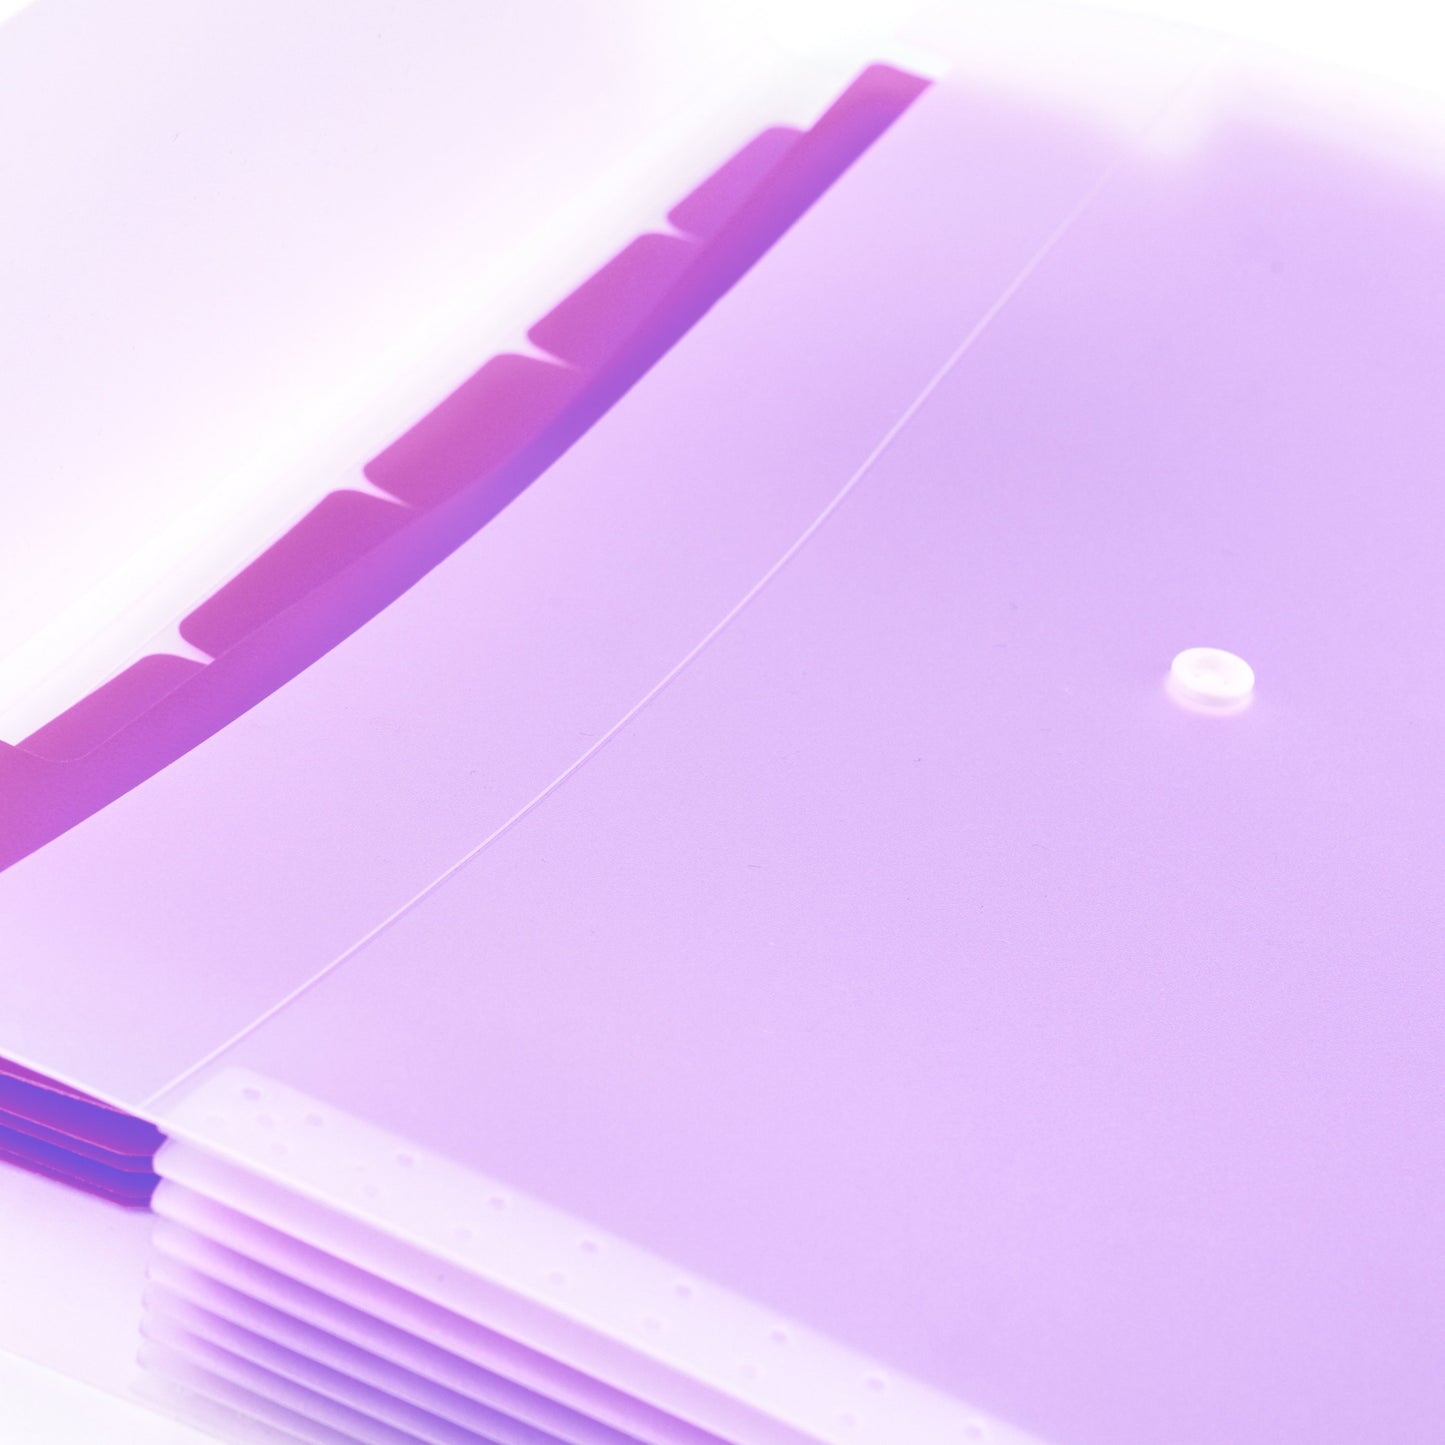 Snuggly A4 Stationery Folder - Royal Mess Purple